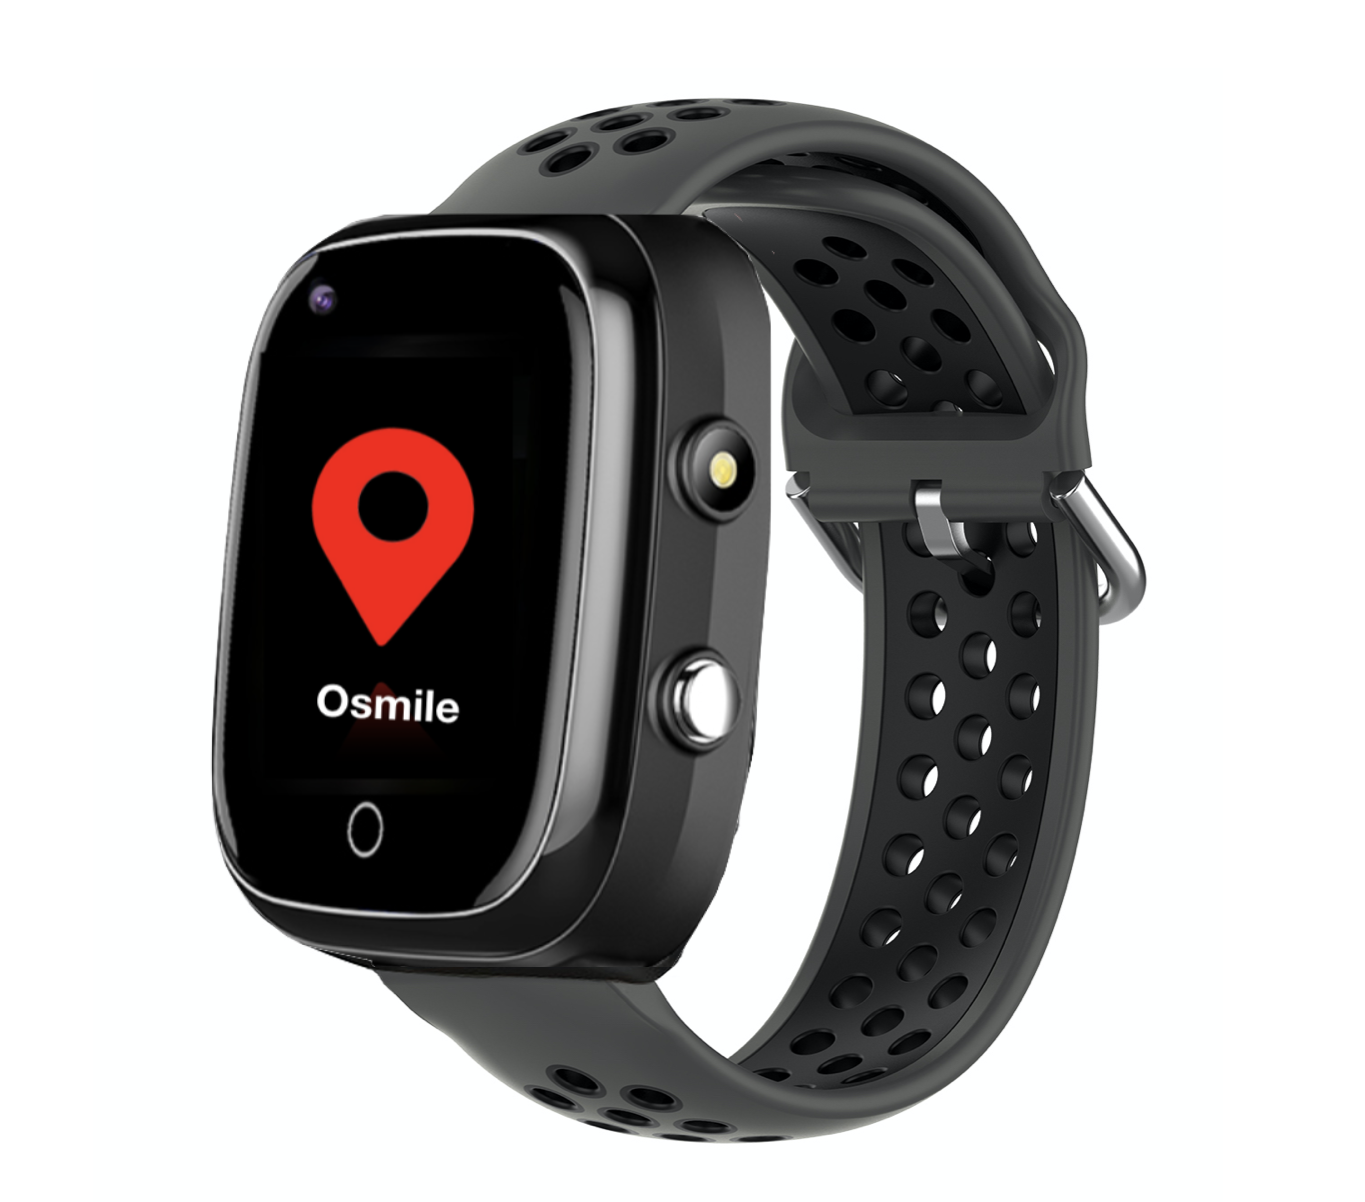 Osmile GPS1000 (L) 獨居老人跌倒偵測與失智老人/ 自閉症 / 智能障礙者防走失緊急求救手錶 / AGPS個人衛星定位器 / 防走失手錶 /定位手錶/ 血氧手錶 (血氧偵測、遠距體溫健康量測與GPS精準定位輔具手錶)